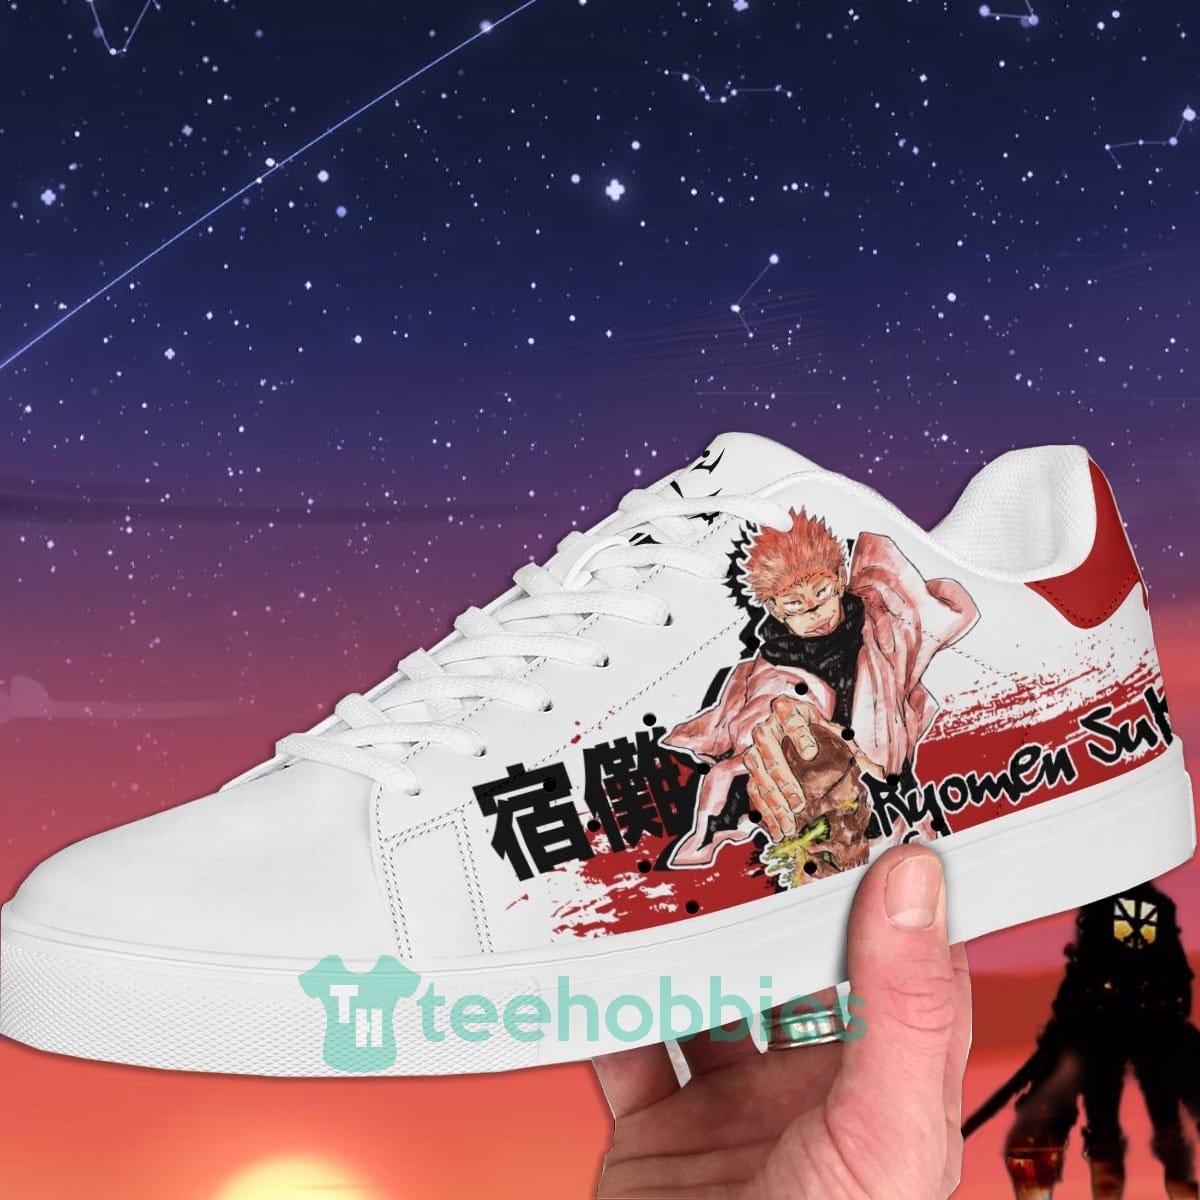 Anime Twitter banner for Skate by JUZOYENA on DeviantArt